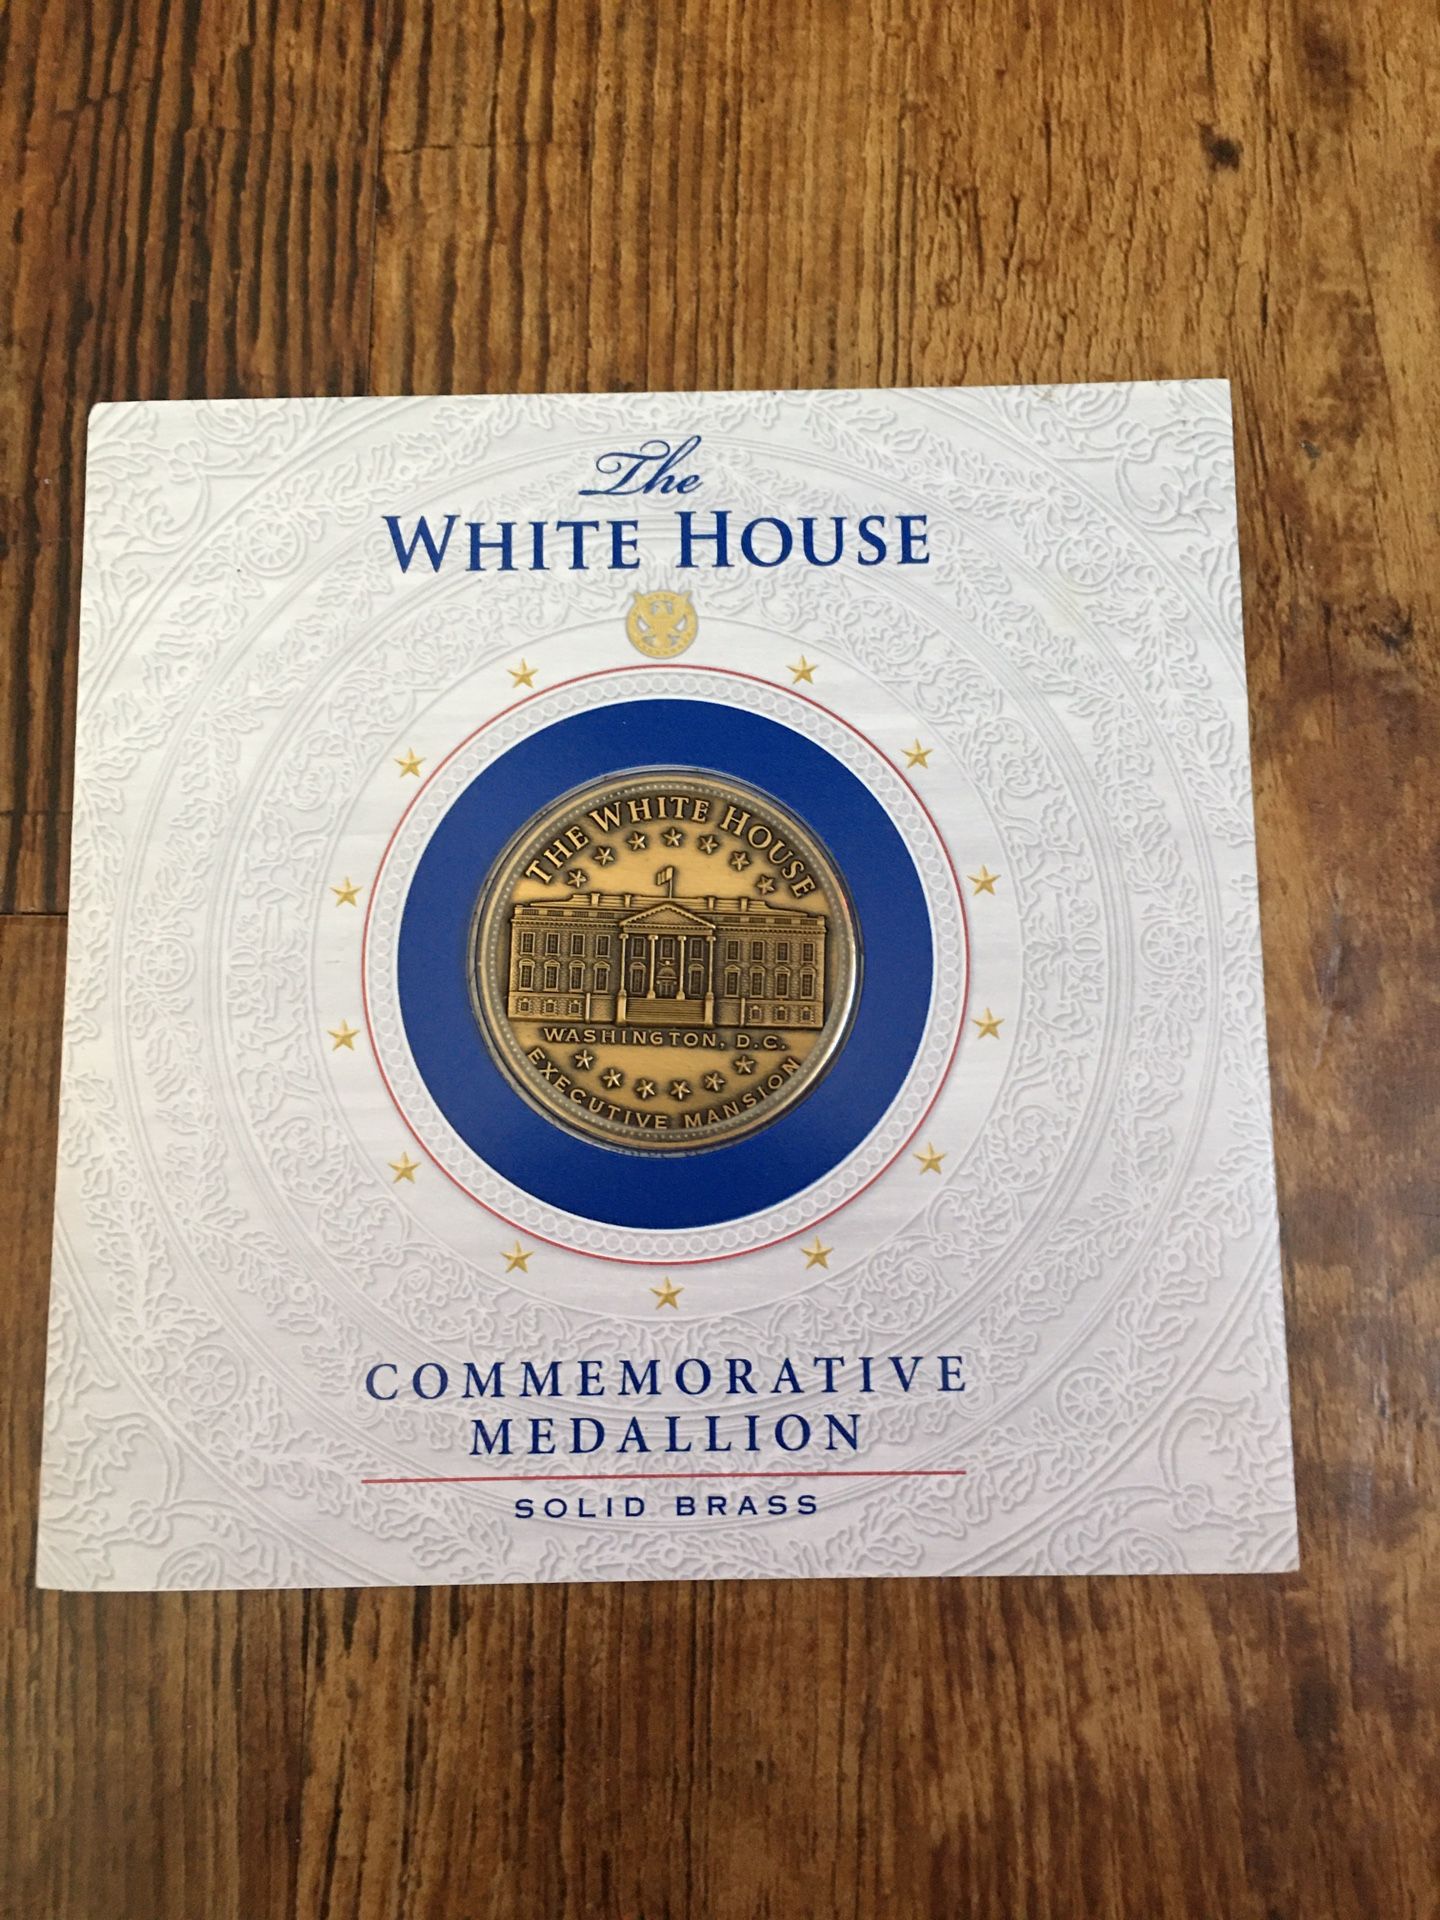 2 White House medallions